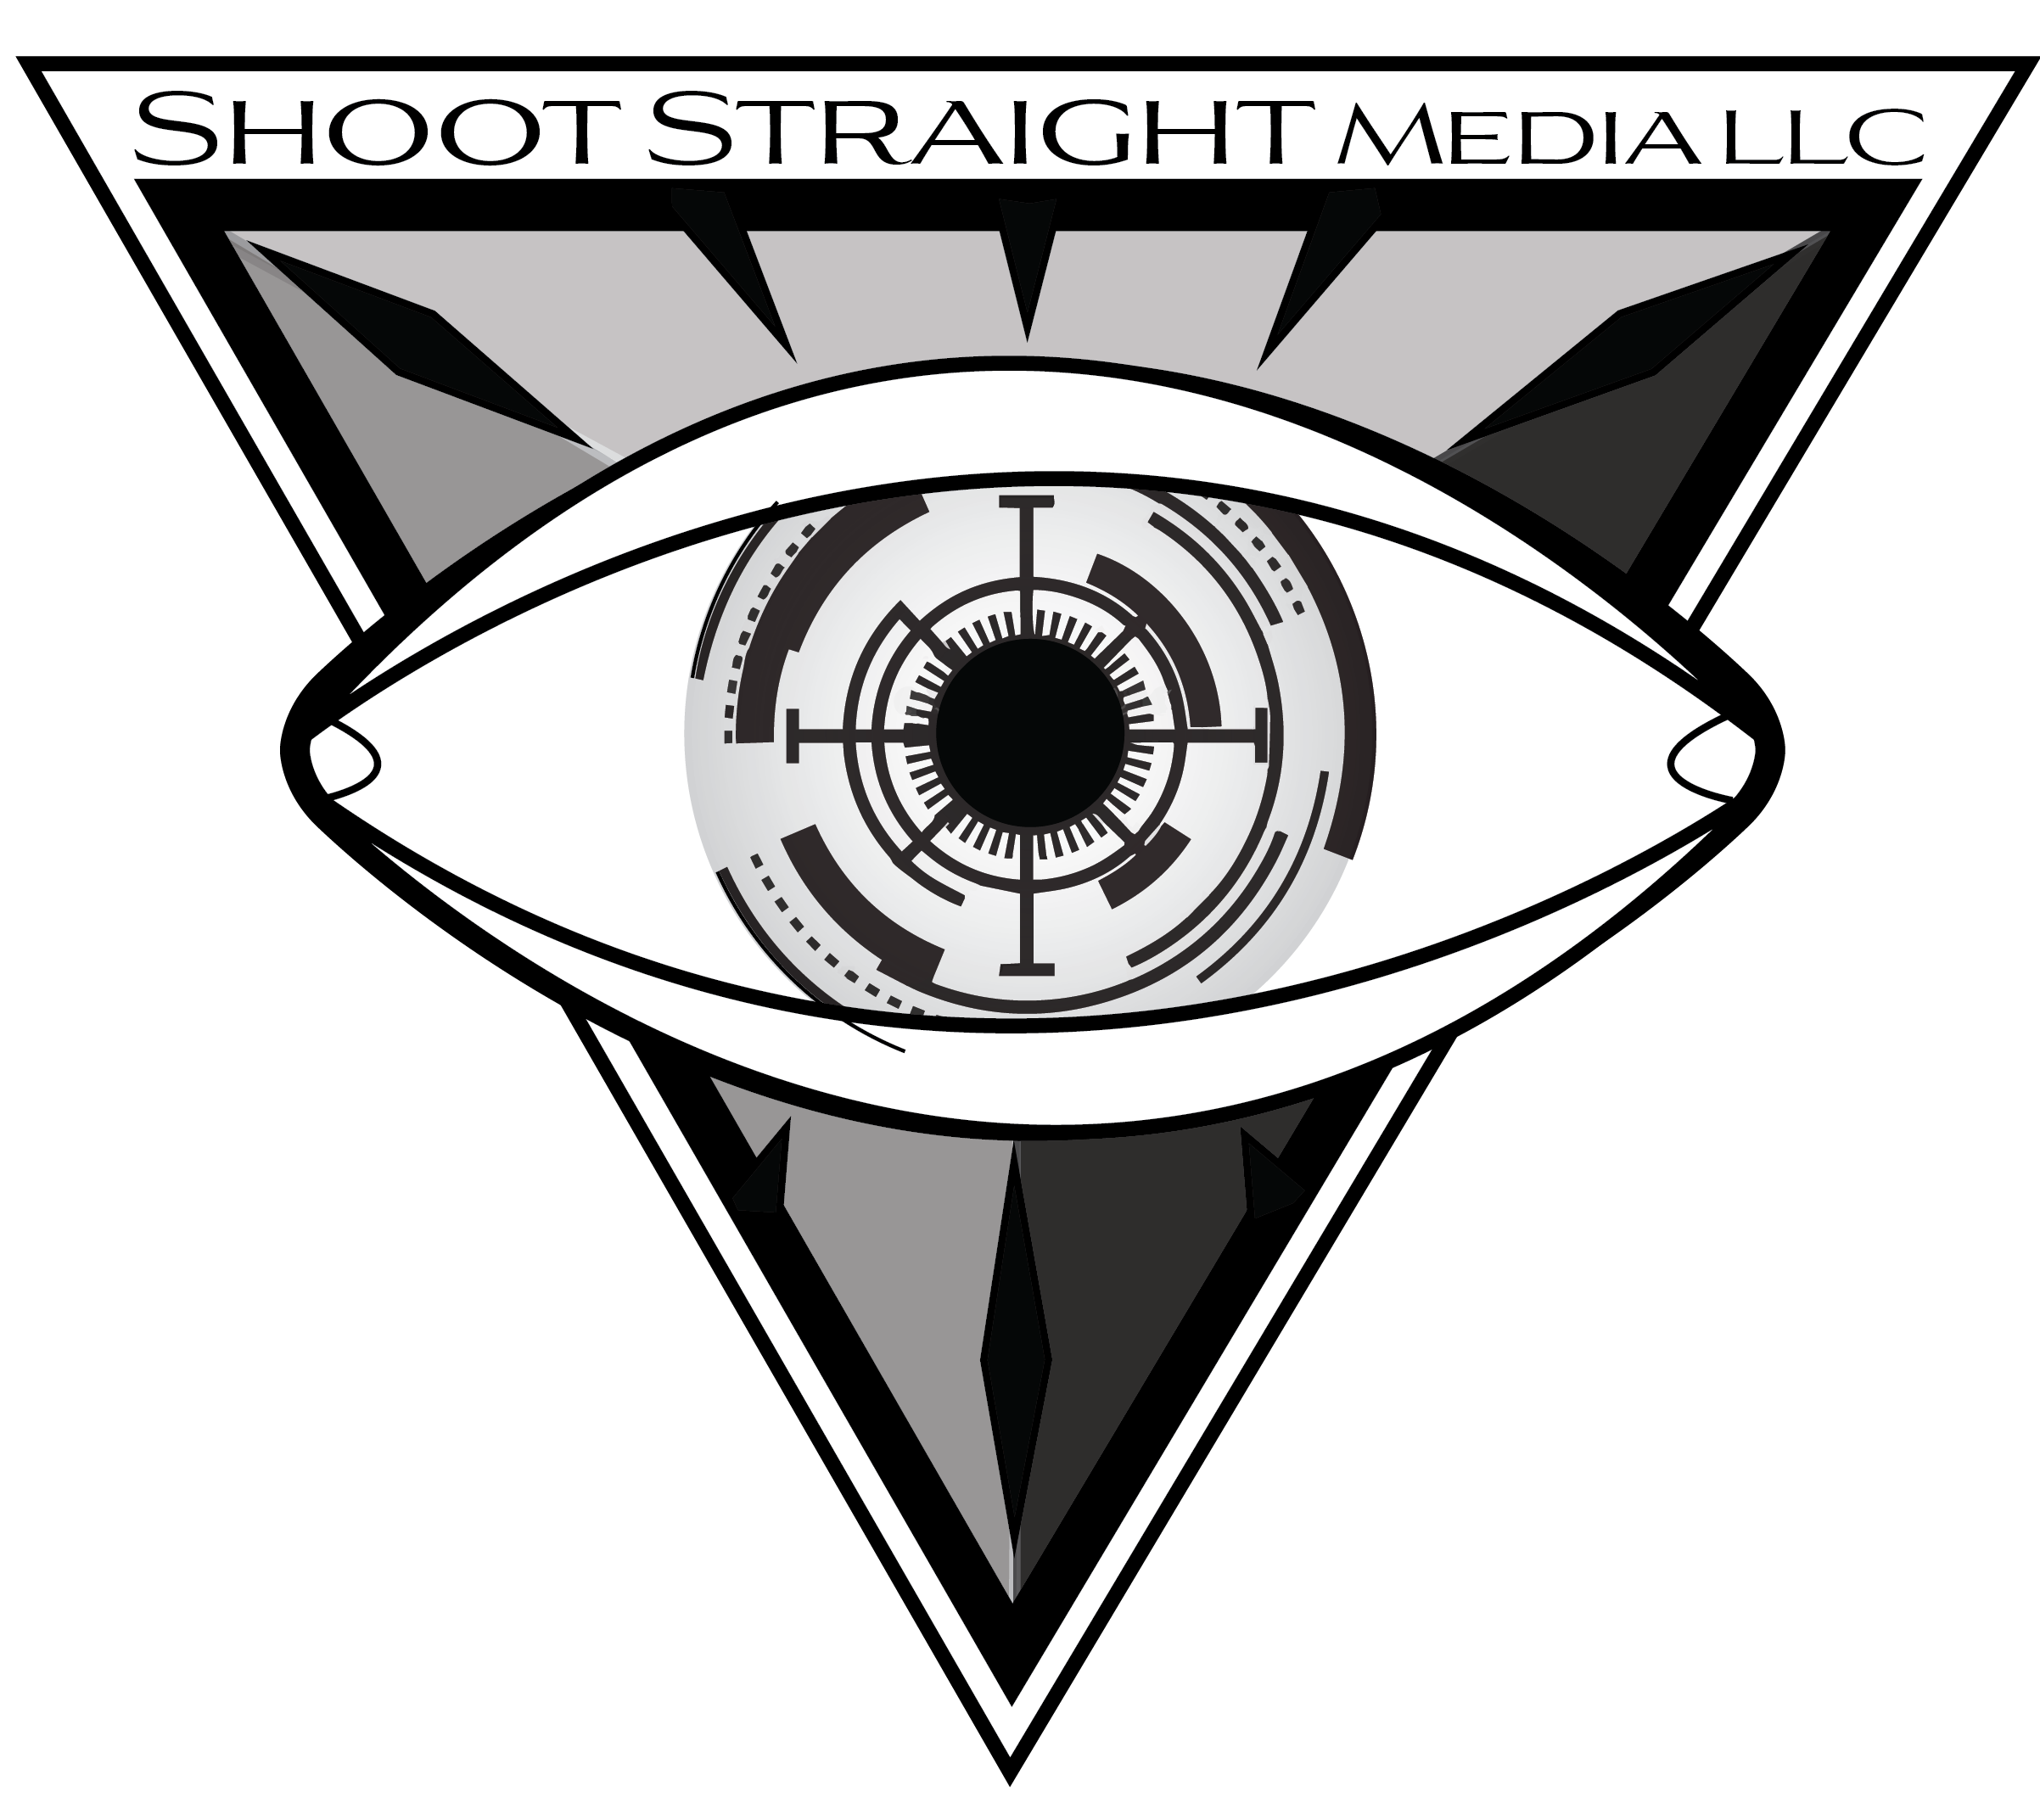 Shoot Straight Media LLC